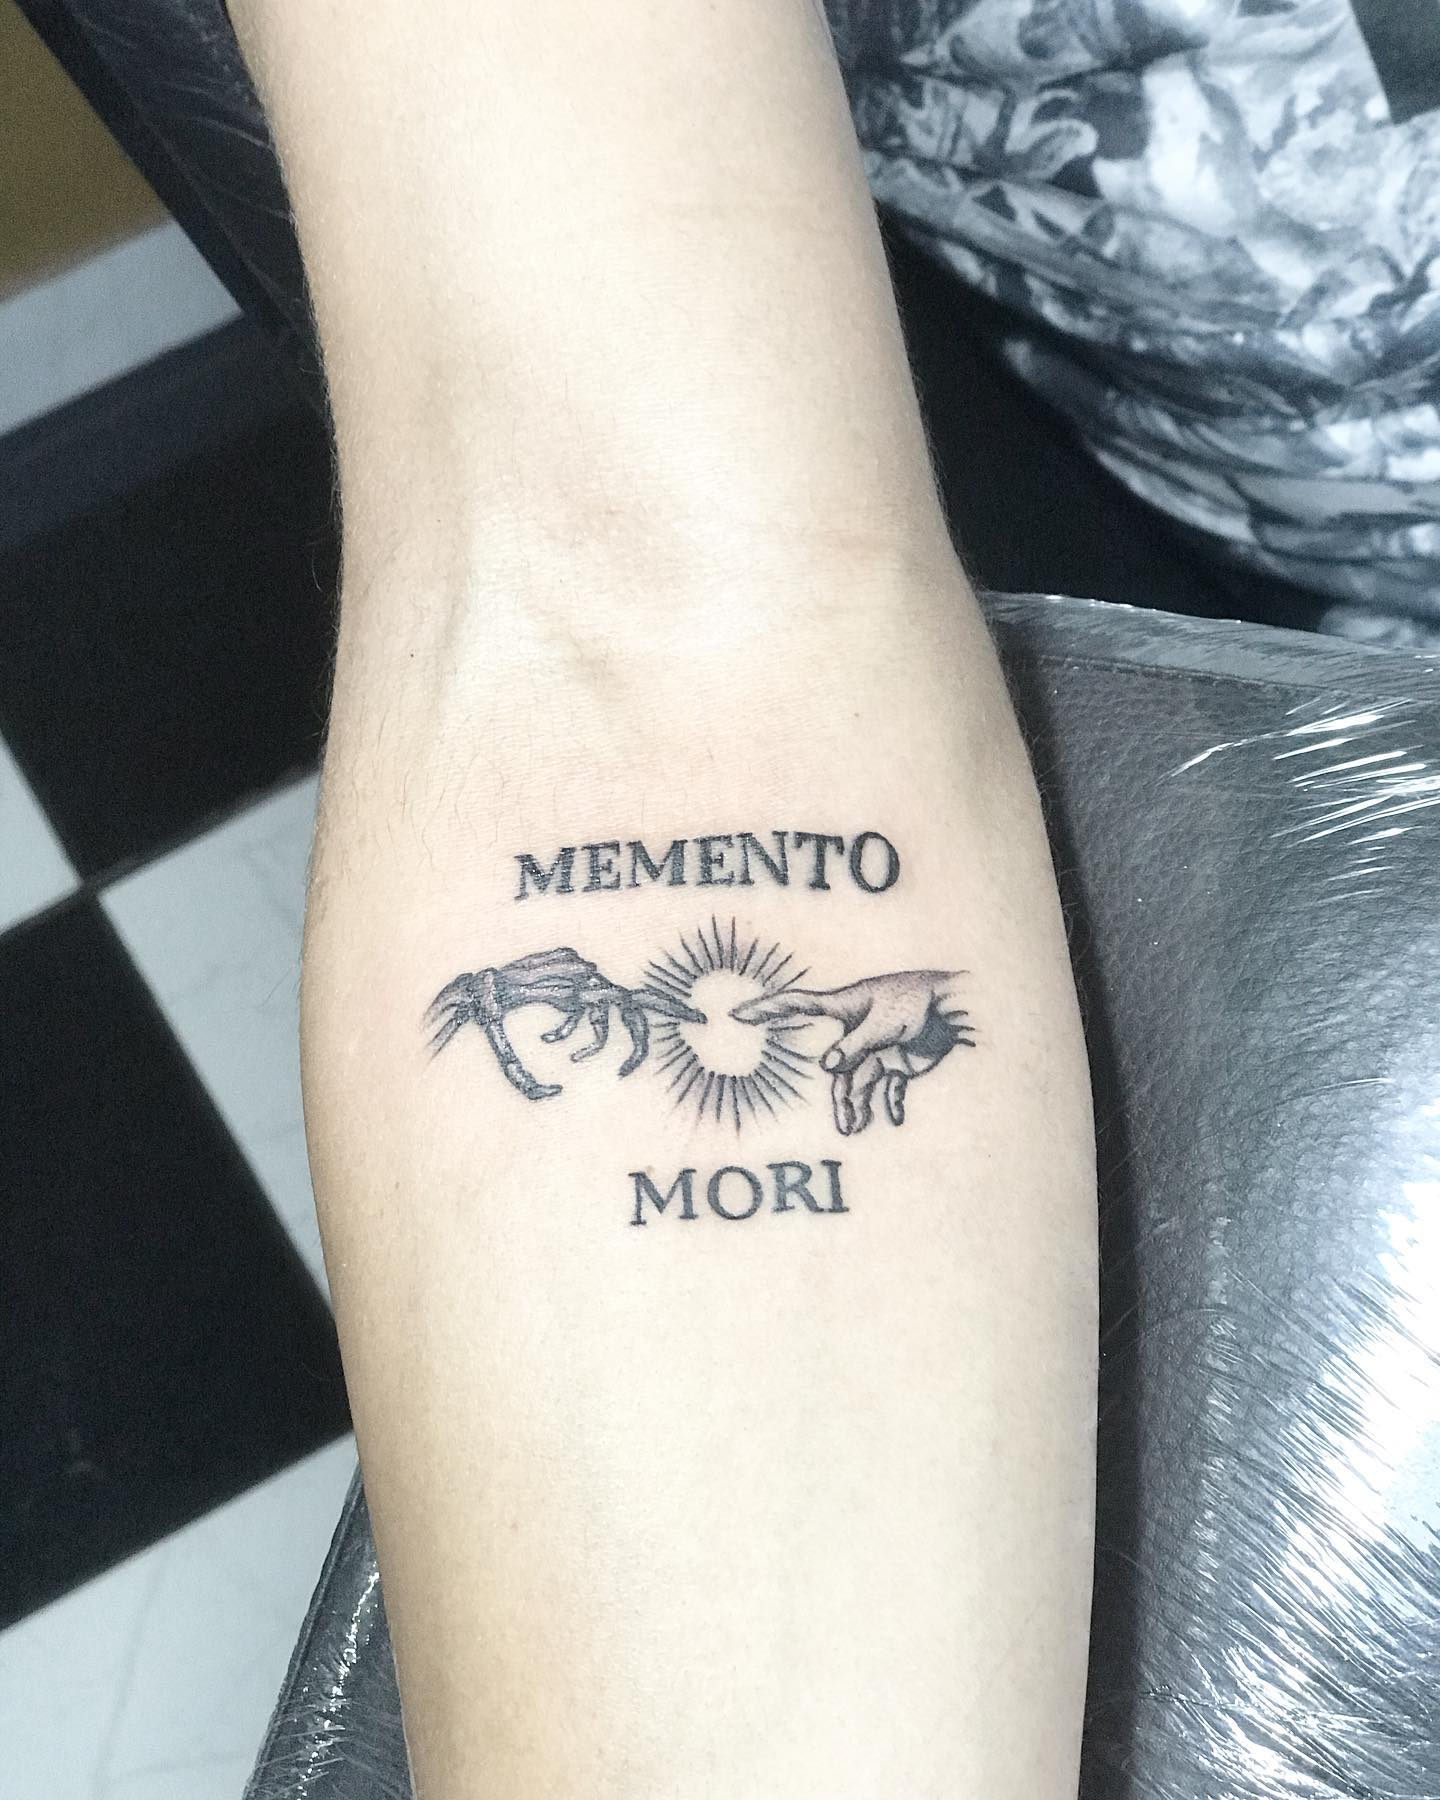 Memento Mori Tattoo  Best Tattoo Ideas Gallery